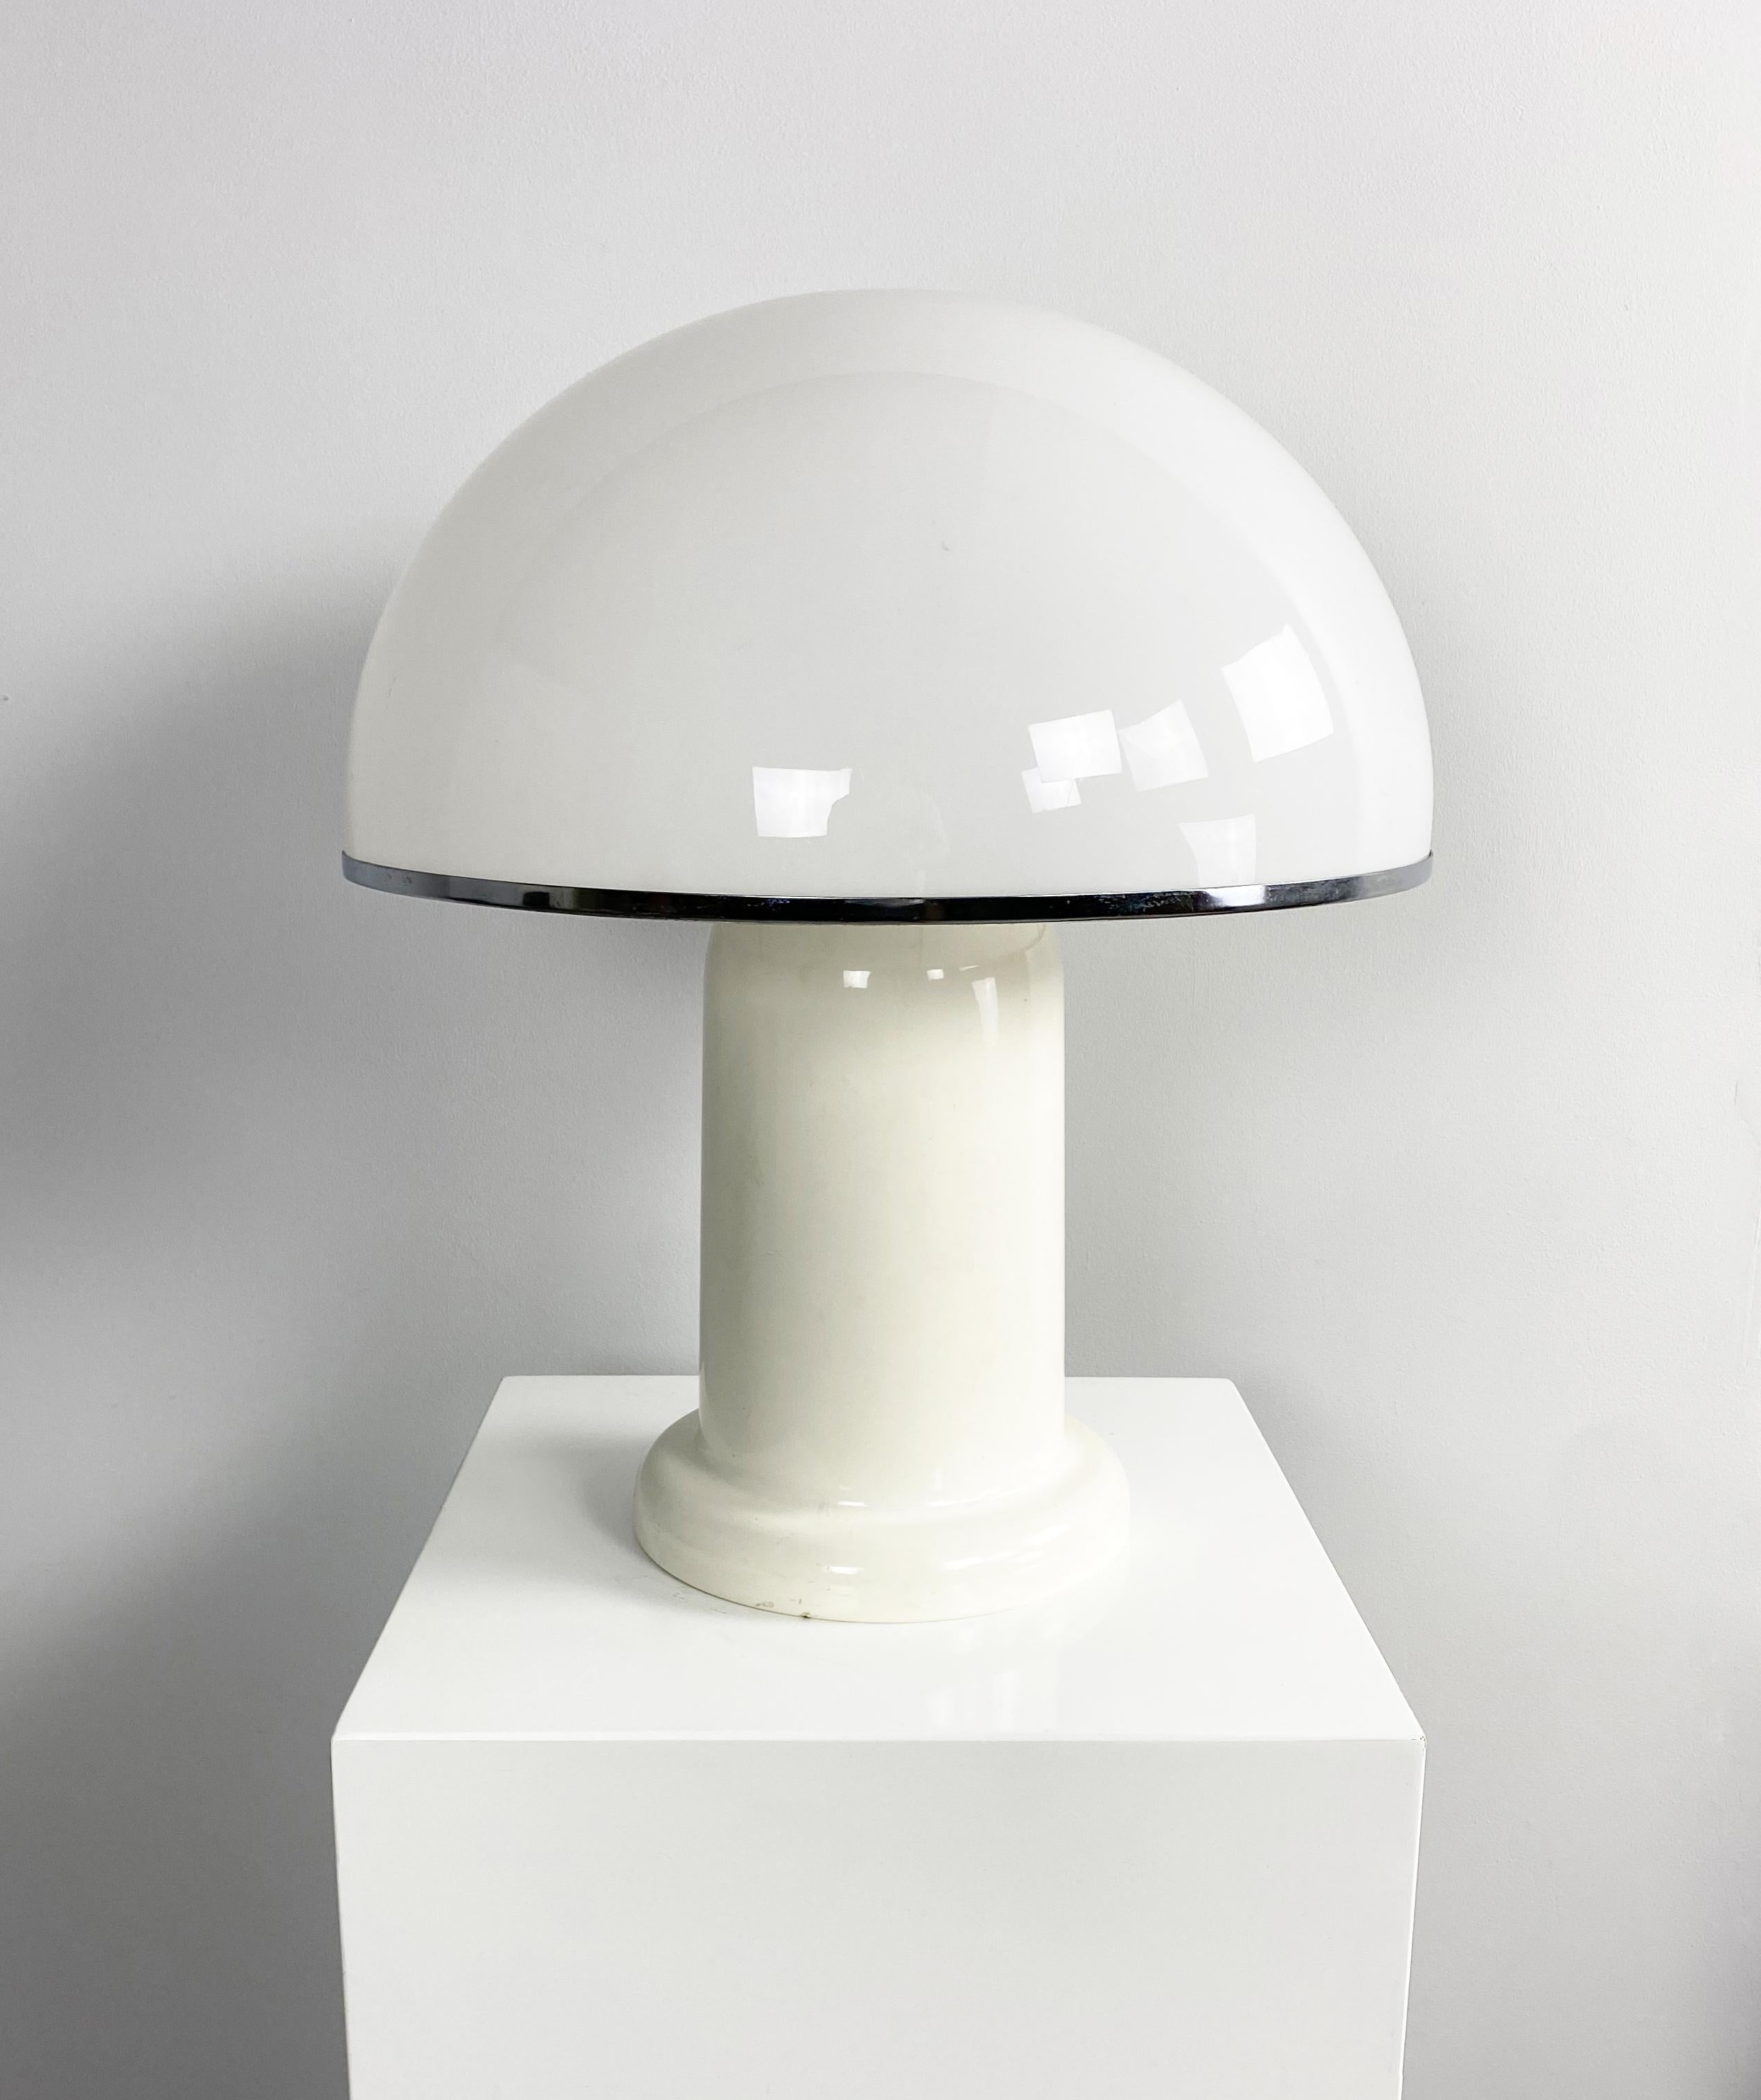 Große Space Age-Tischlampe, hergestellt von Groupe Habitat, Frankreich, um 1970. Geformt aus einem großen Plexiglas-Kuppelschirm auf einem Sockel aus lackiertem Aluminium.

Abmessungen (cm, ca.): 
Höhe: 53 
Durchmesser: 47

Zustand: Guter